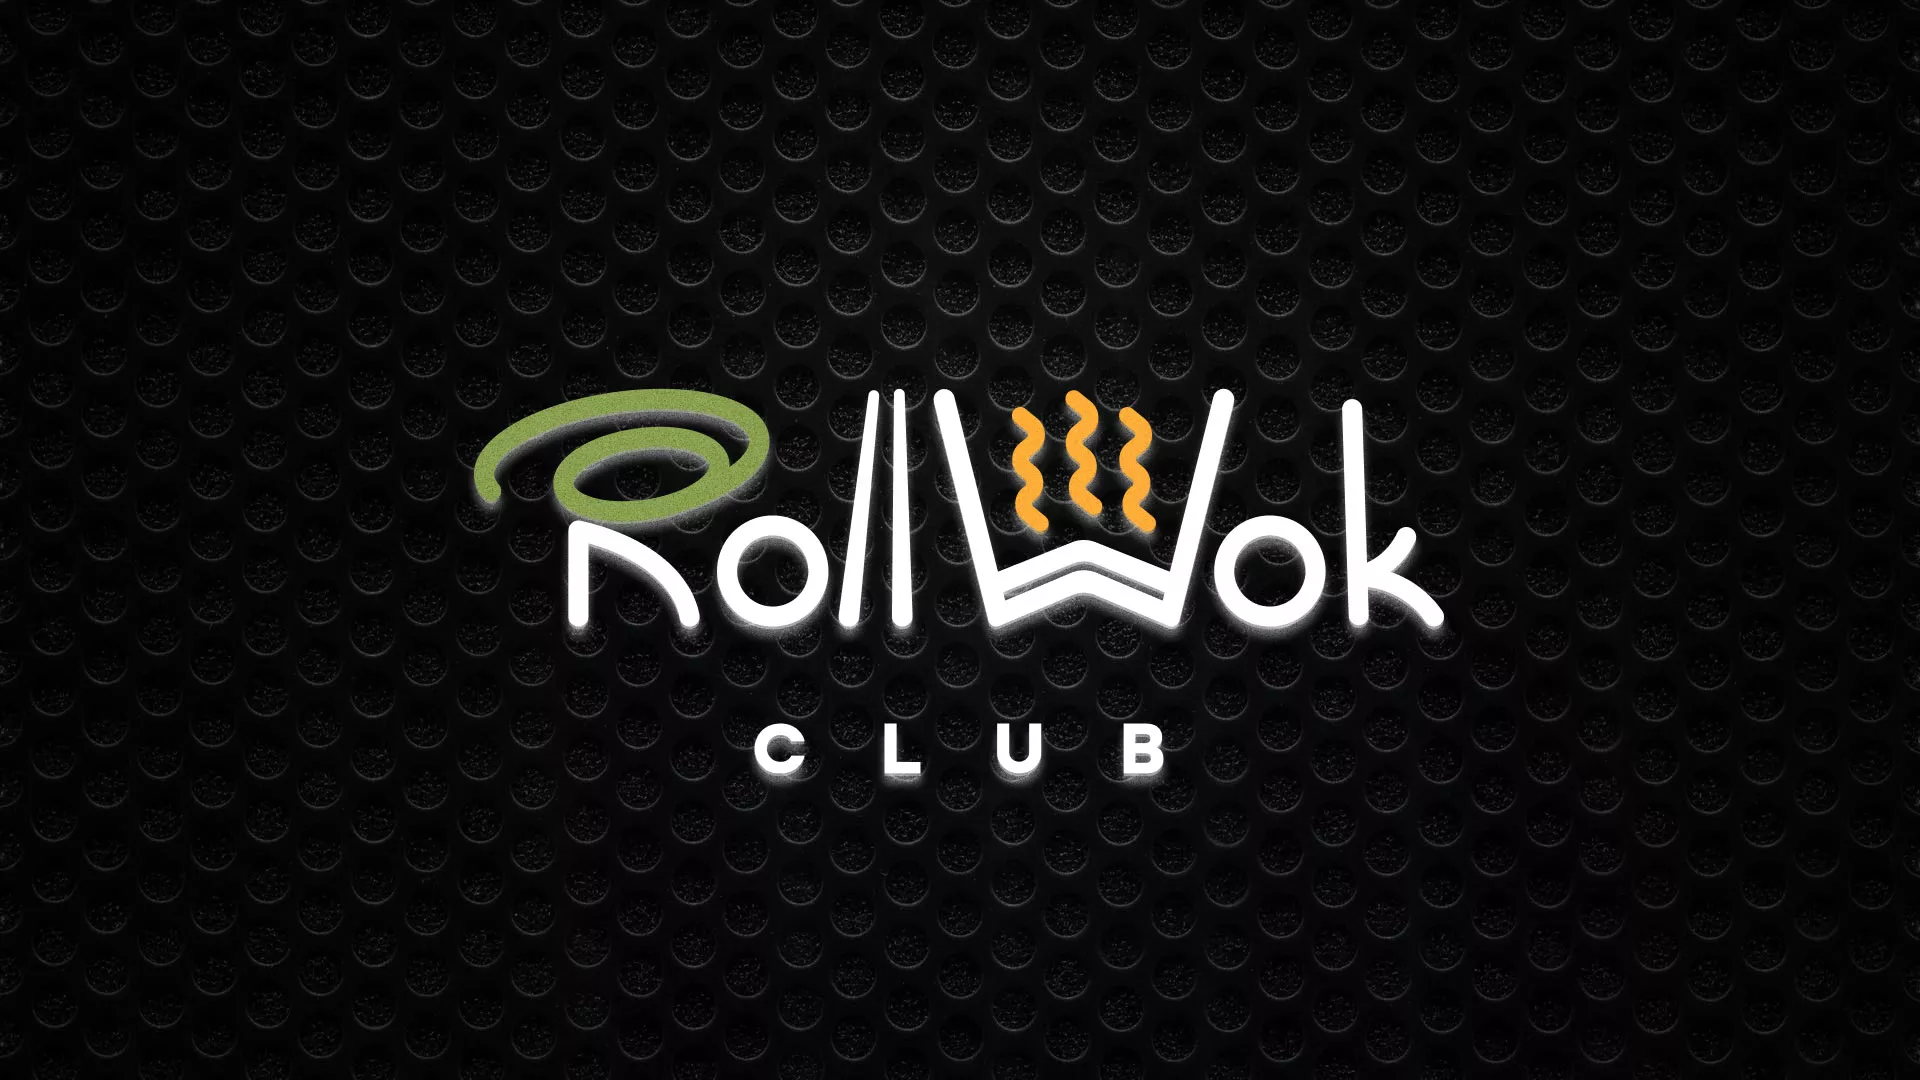 Брендирование торговых точек суши-бара «Roll Wok Club» в Петрове Вале